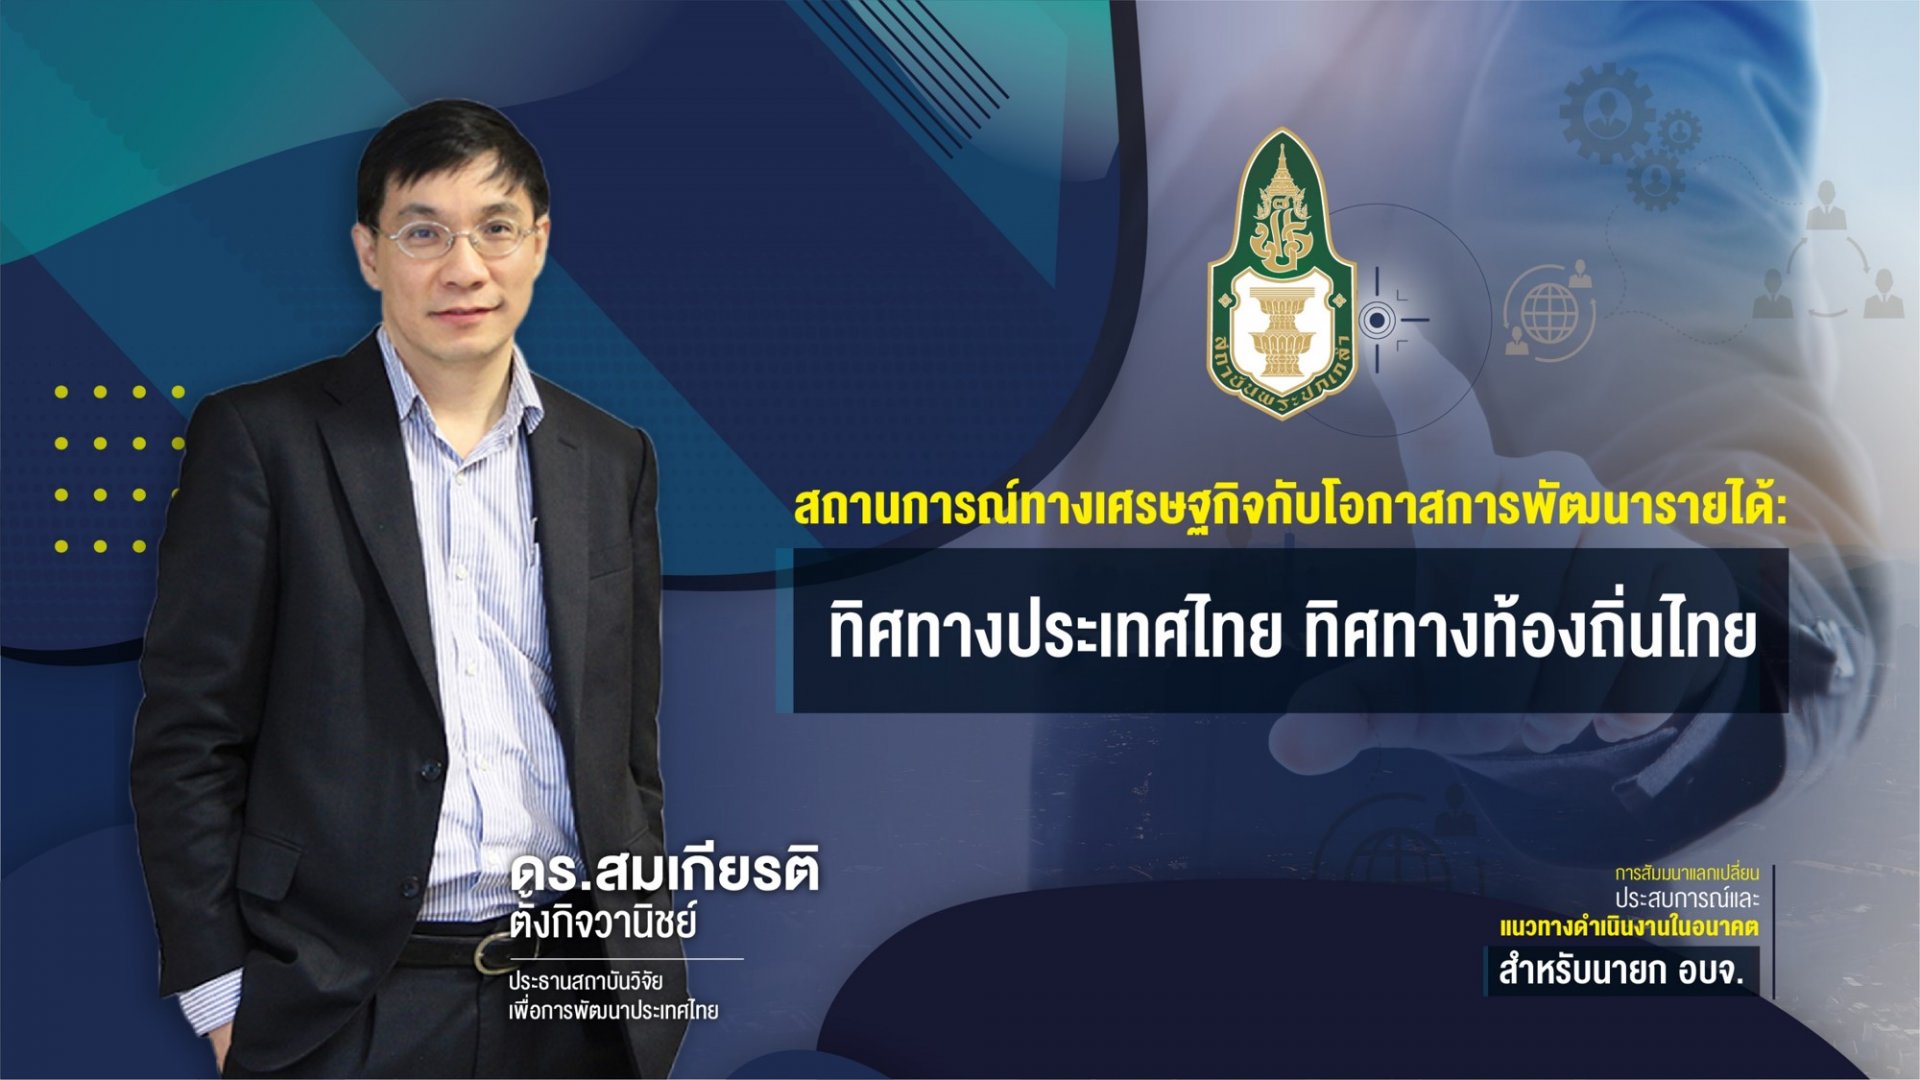 สถานการณ์ทางเศรษฐกิจกับโอกาสพัฒนารายได้ ทิศทางประเทศไทย ทิศทางท้องถิ่นไทย